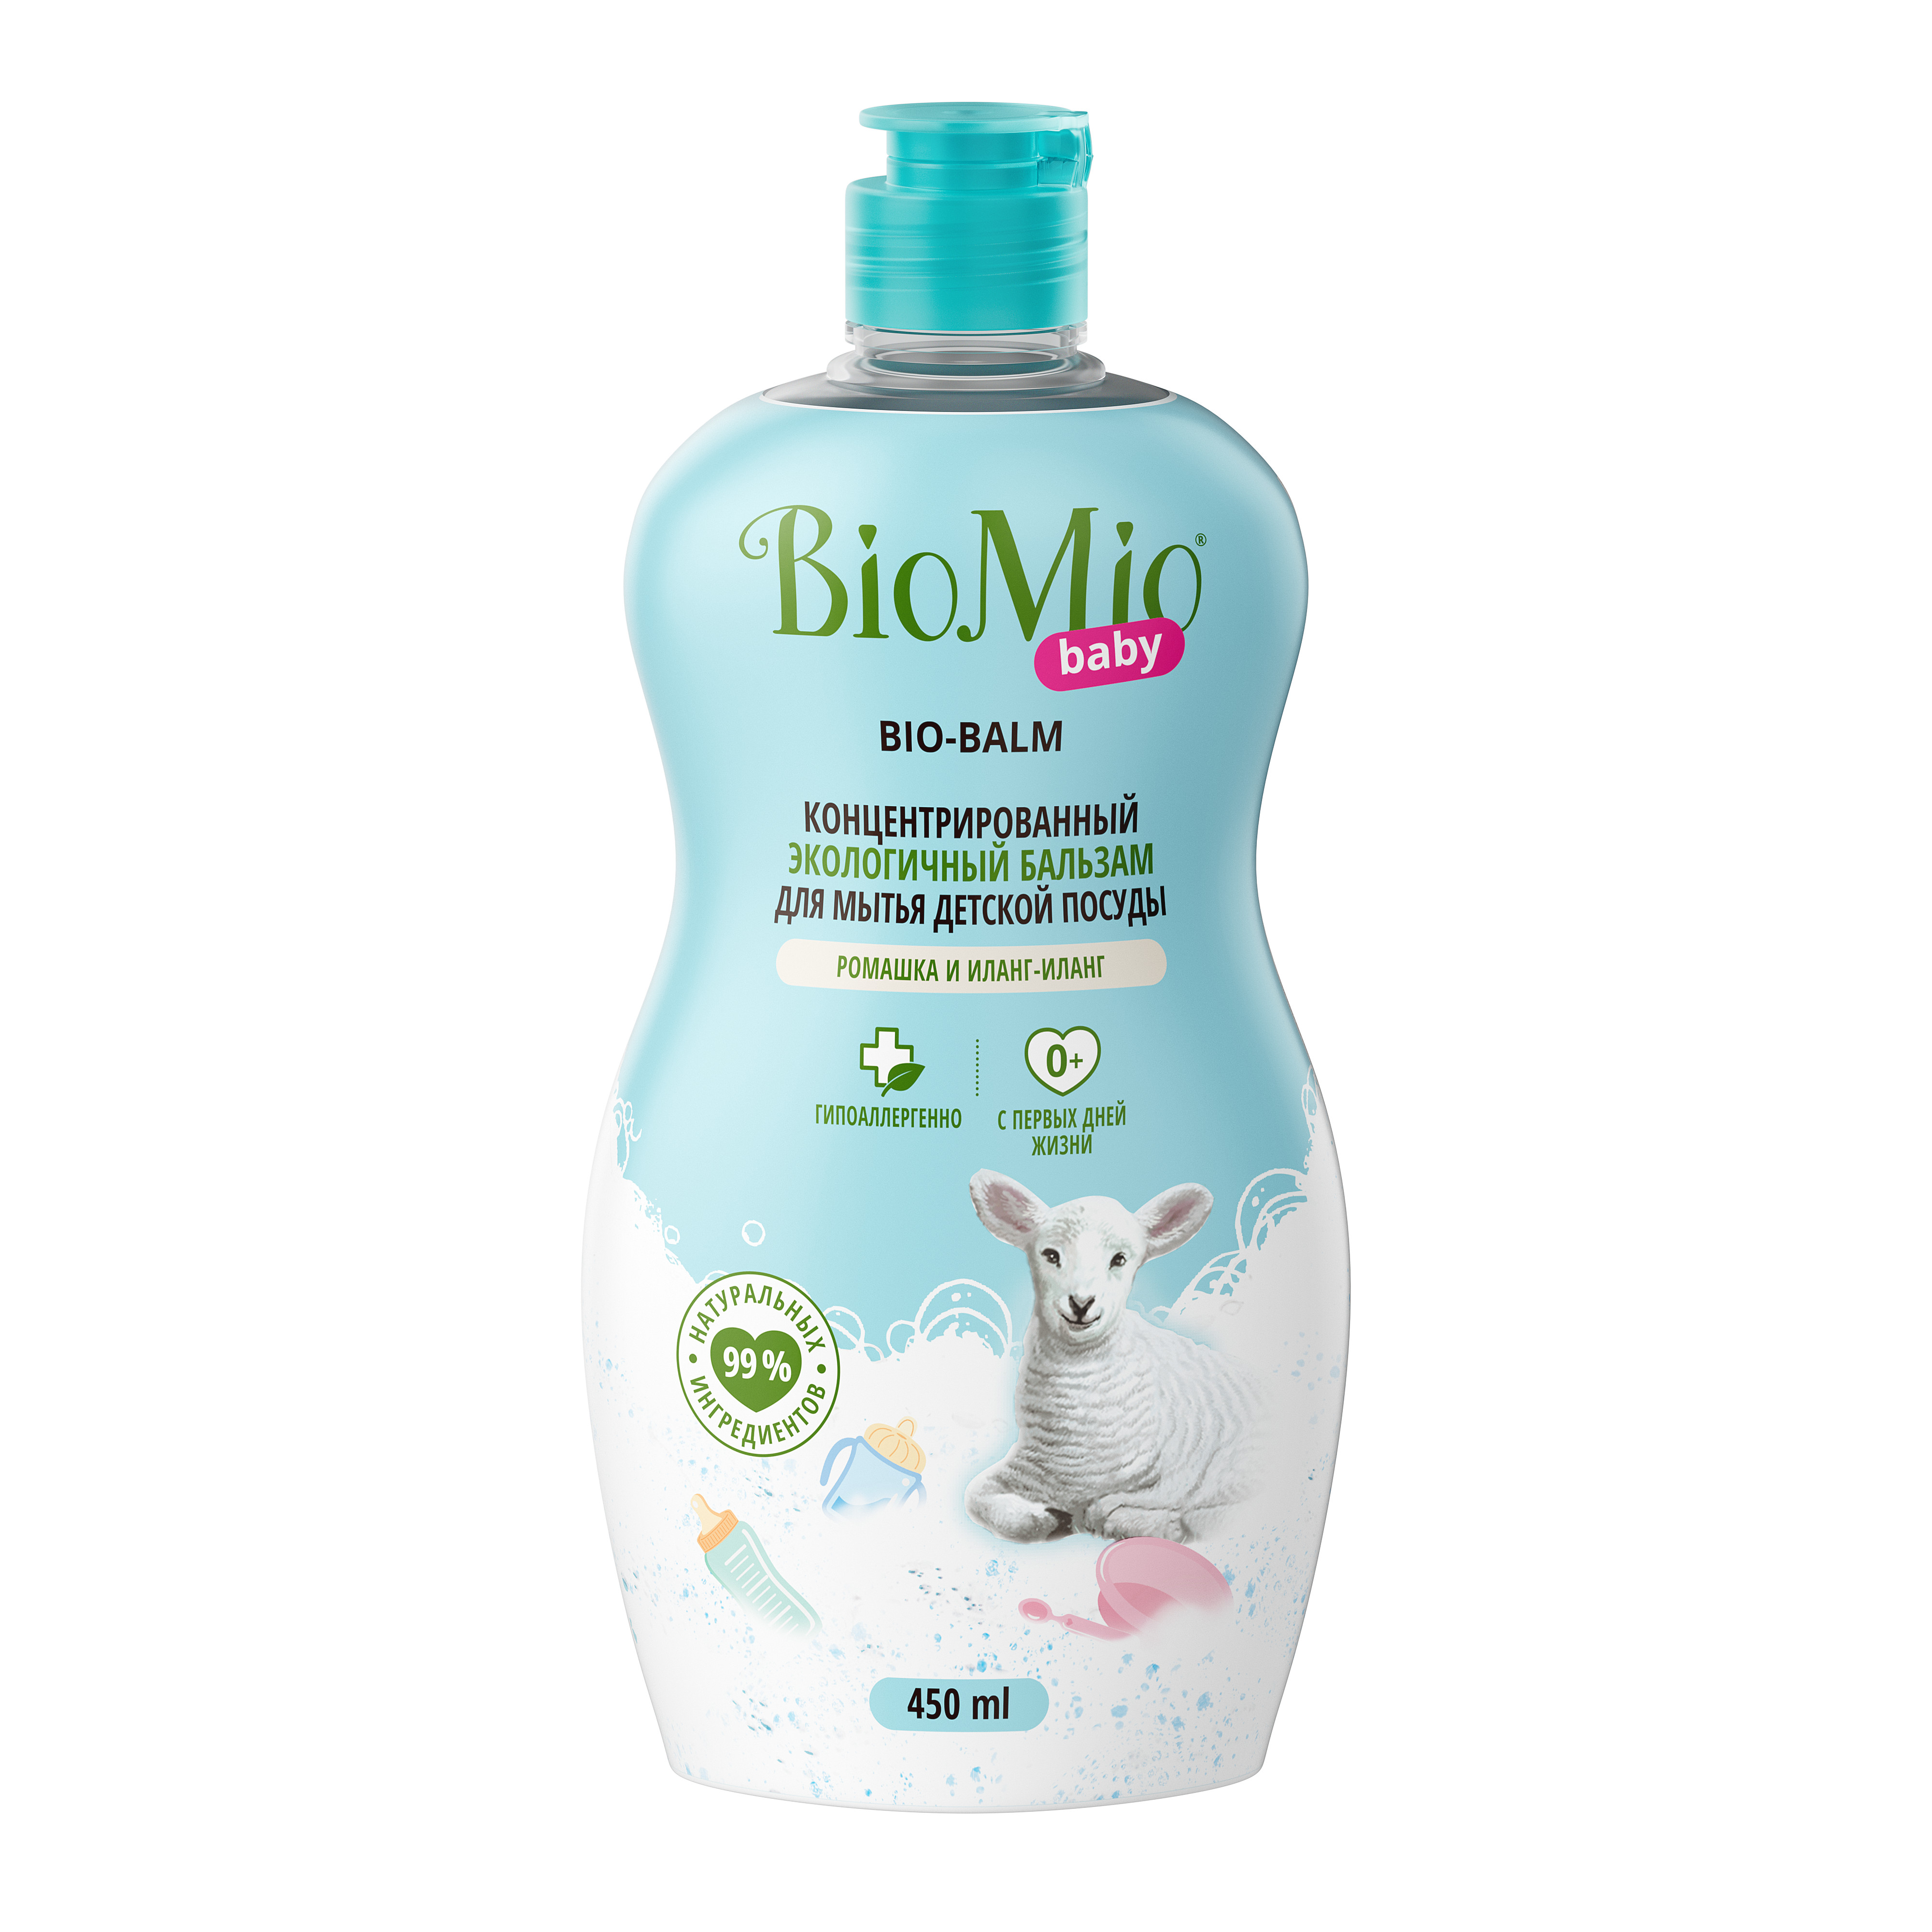 BioMio Экологичный бальзам для мытья детской посуды «Ромашка и иланг-иланг» 0+, 450 мл (BioMio, Посуда)